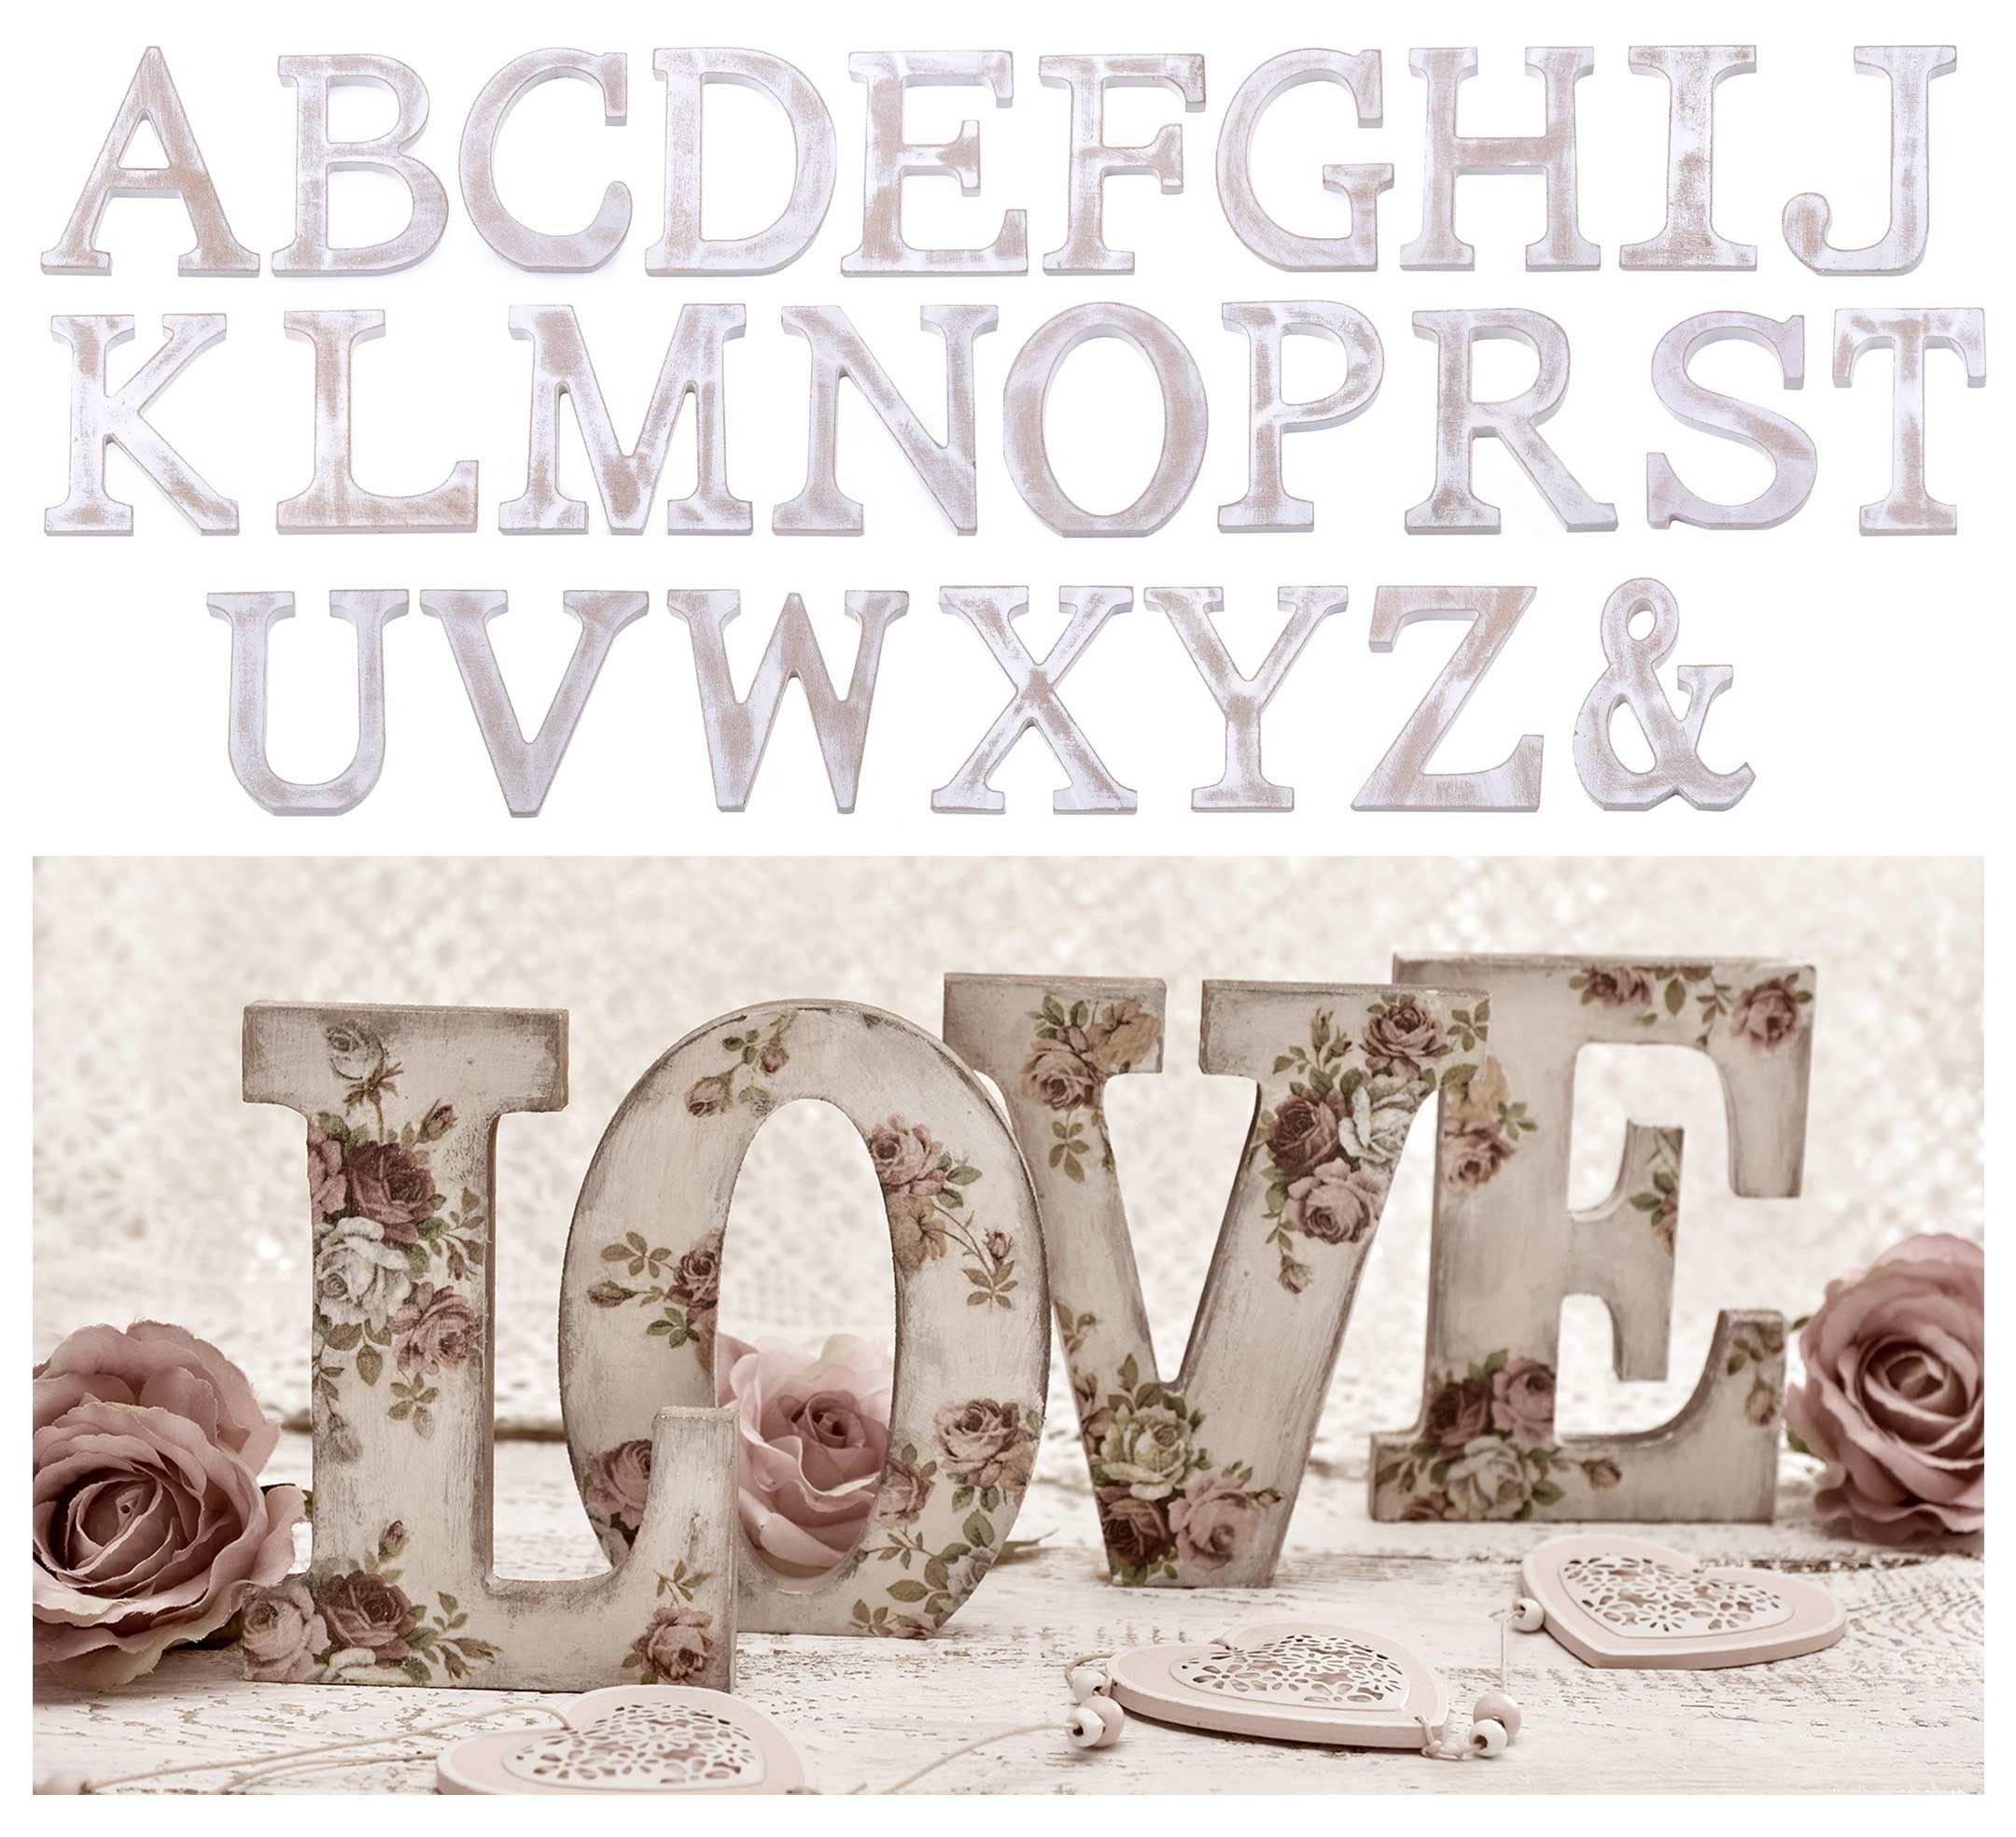 Einzelbuchstabe "J" maDDma Deko-Buchstaben 3D 11 Holzbuchstabe cm, weiß-vintage,